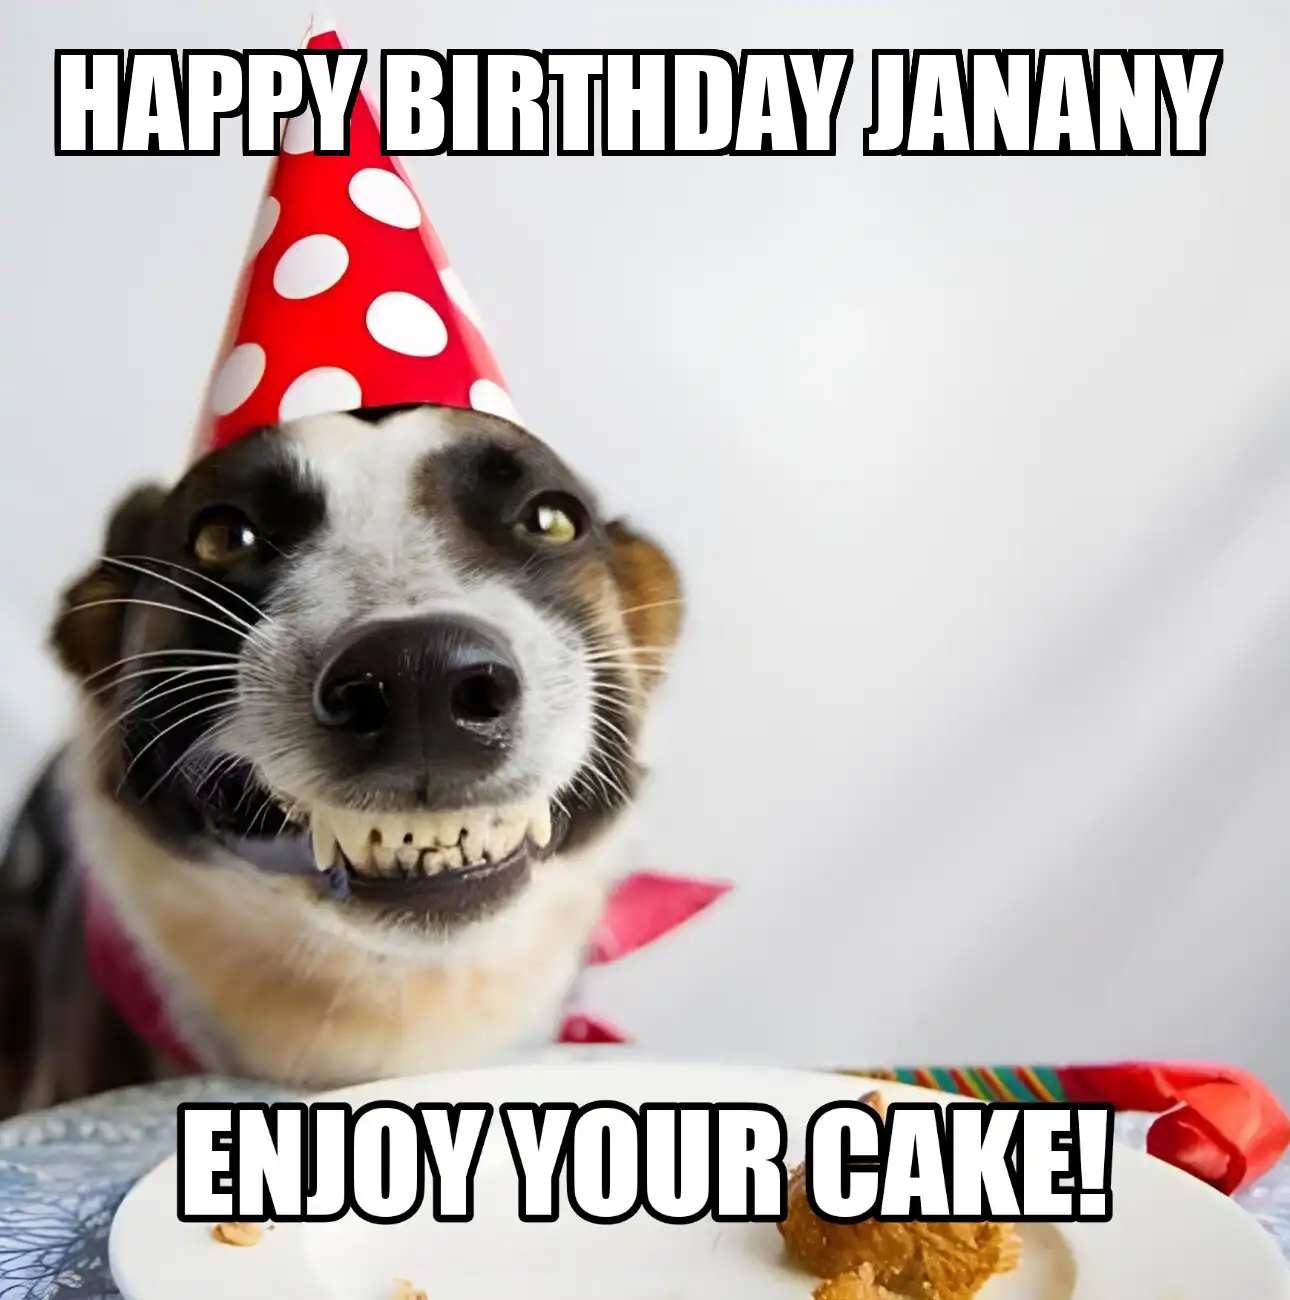 Happy Birthday Janany Enjoy Your Cake Dog Meme